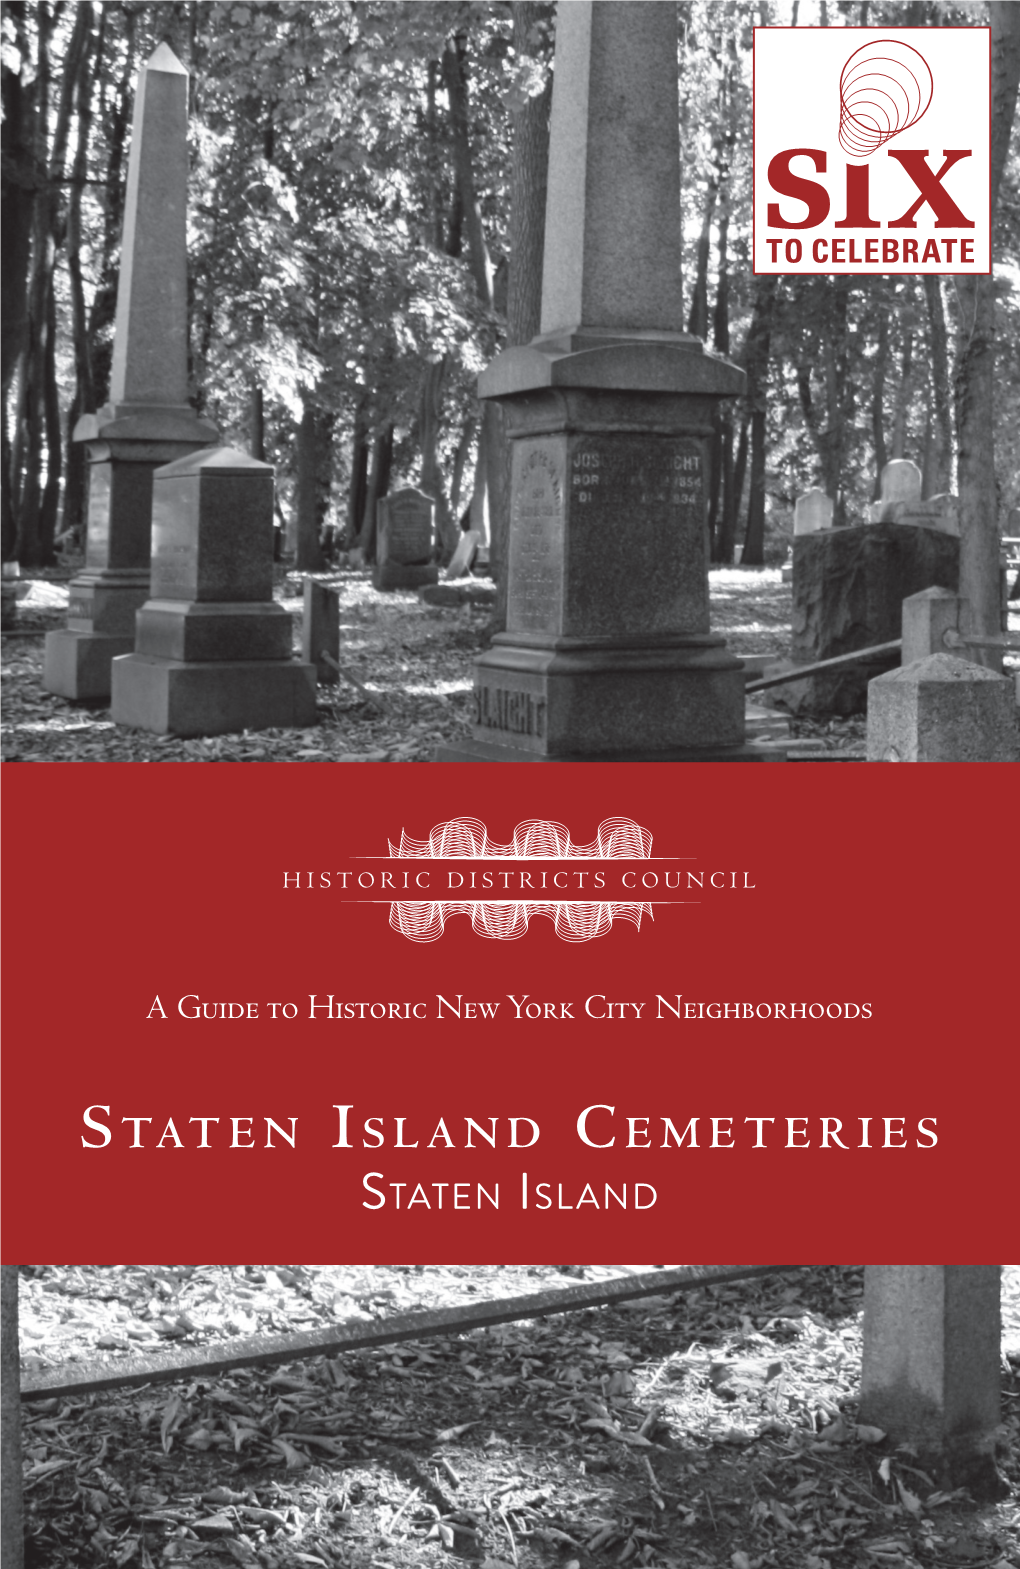 Staten Island Cemeteries